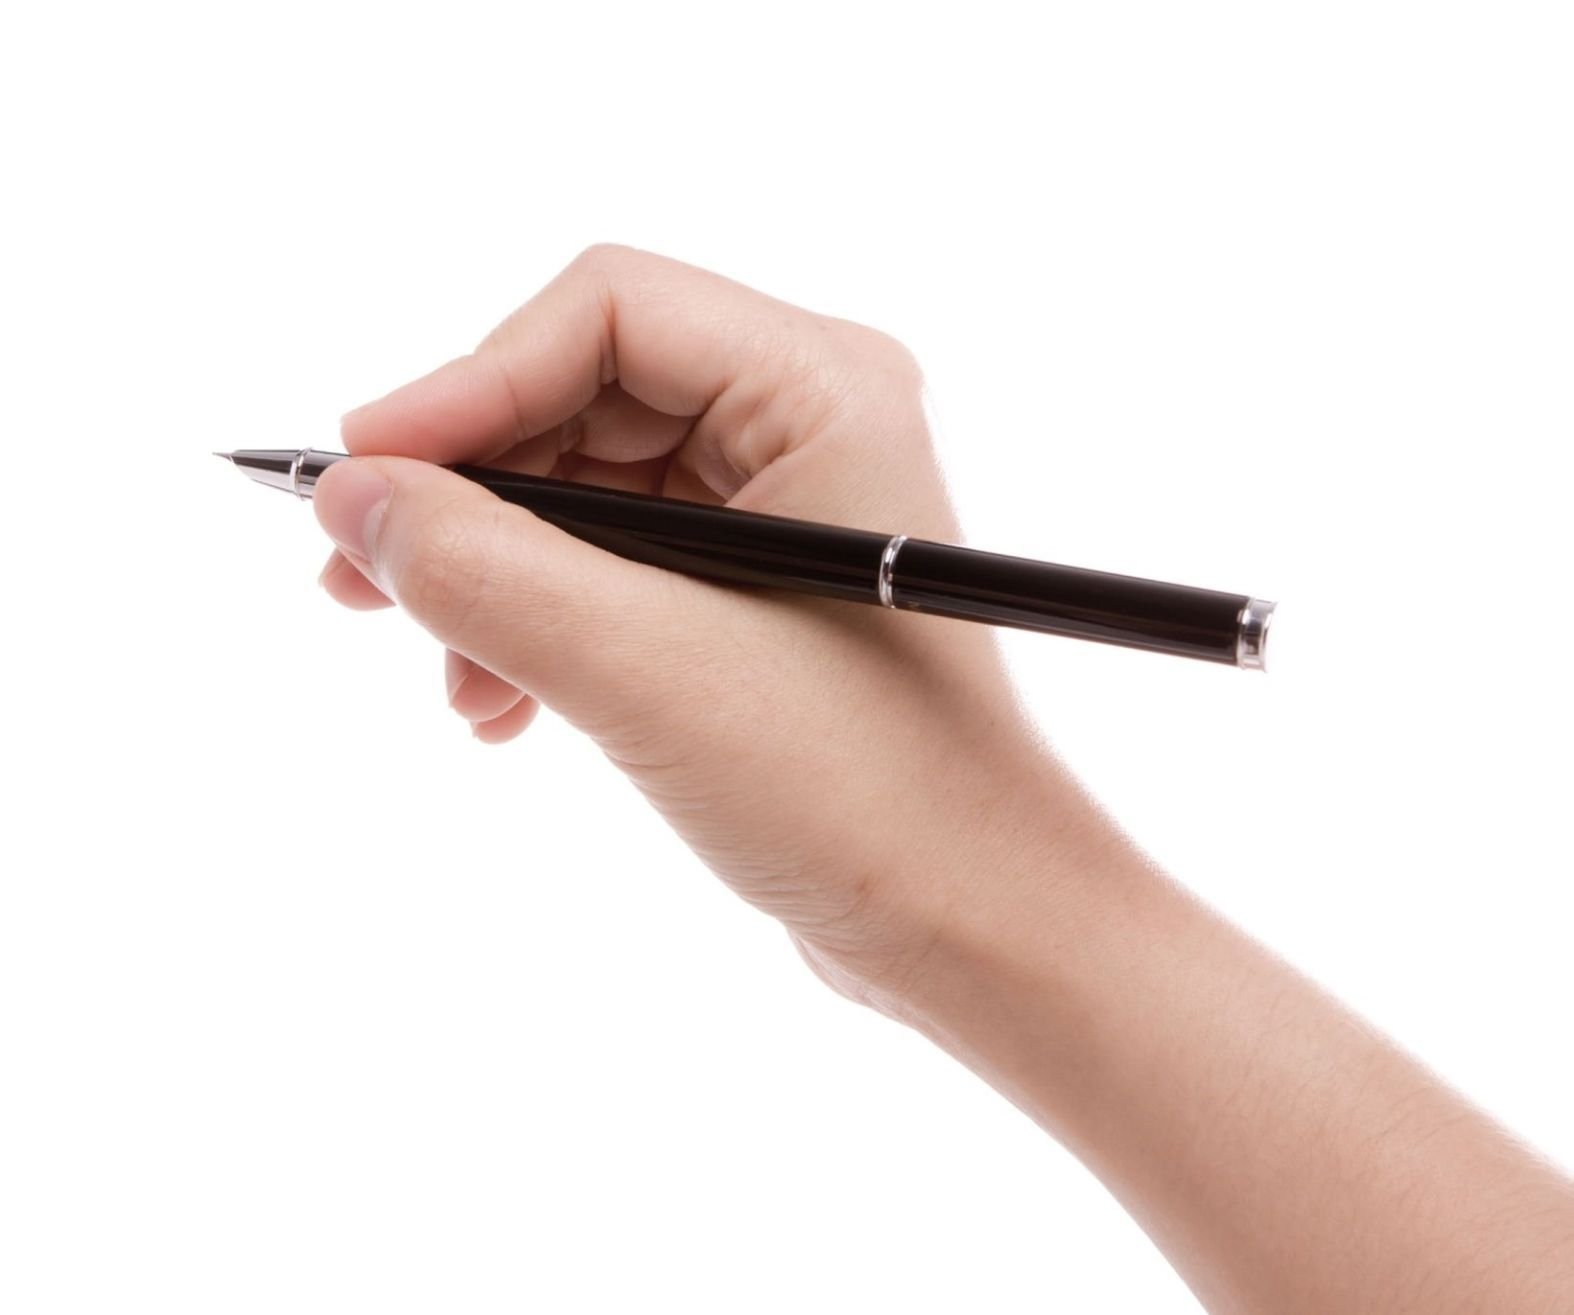 There is a pen in the lunch. Рука с ручкой. Рука с авторучкой. Женская рука с ручкой. Рука держит ручку.